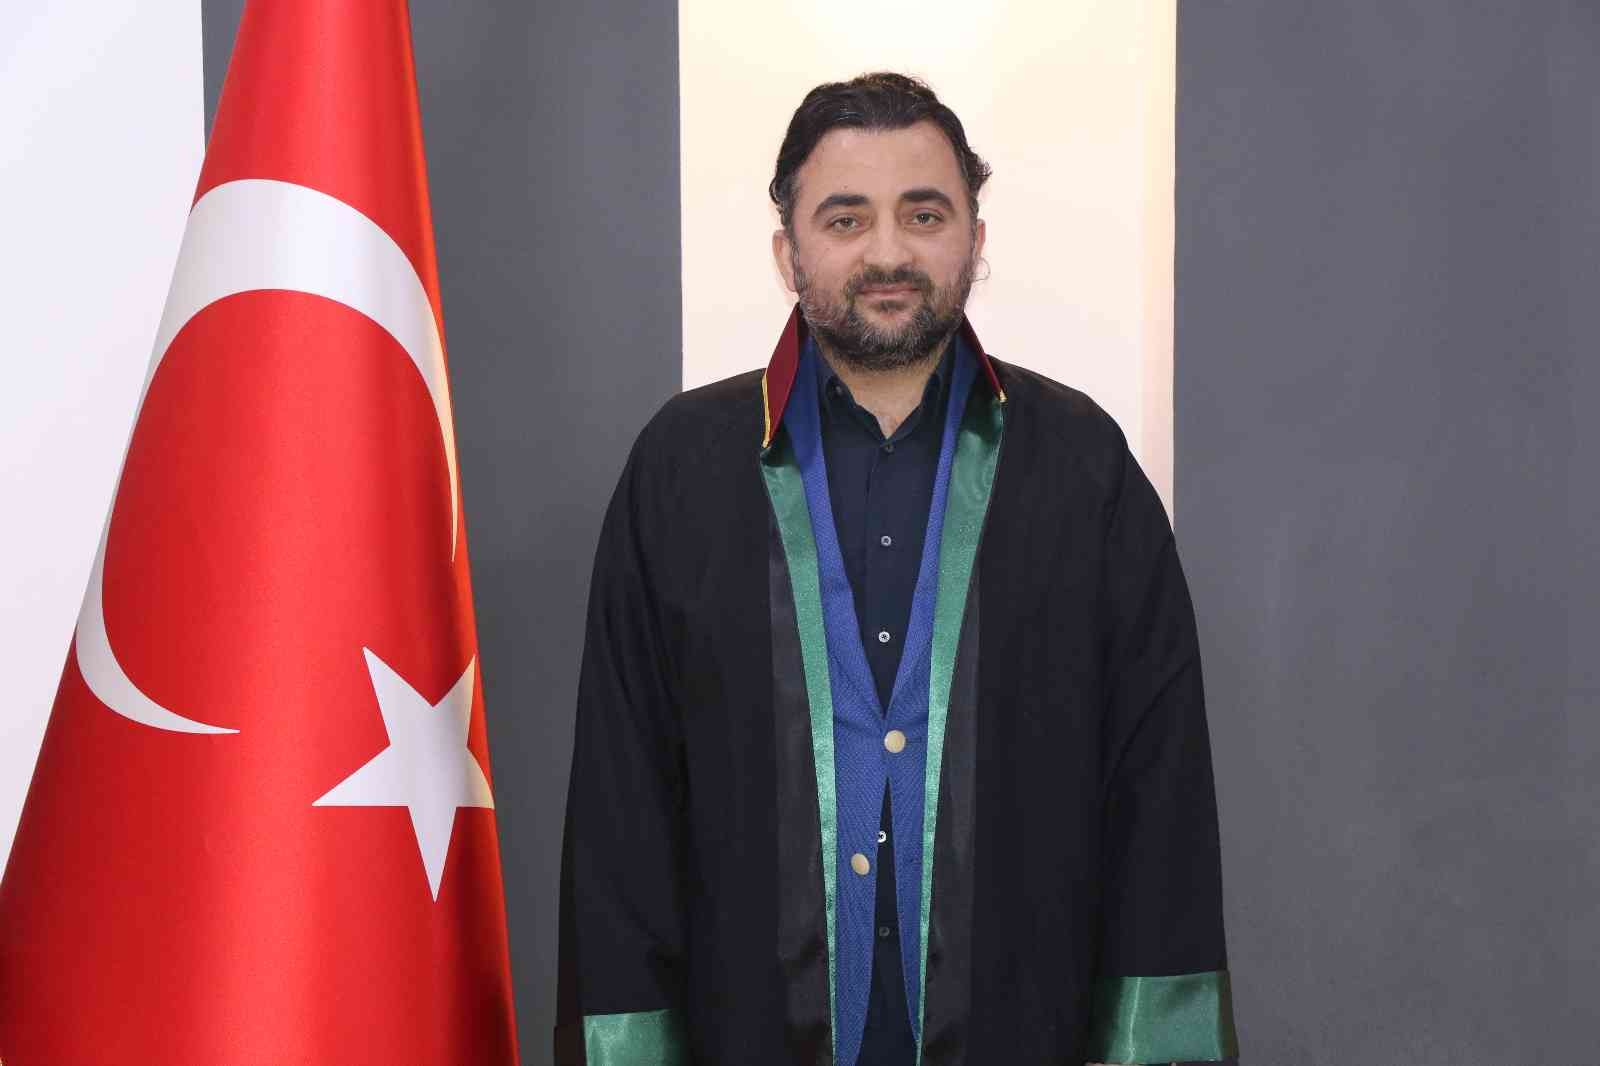 Baro Başkanı Aktürk: “Sarıkamış, bir fedakârlık ve kahramanlık örneğidir” #erzincan